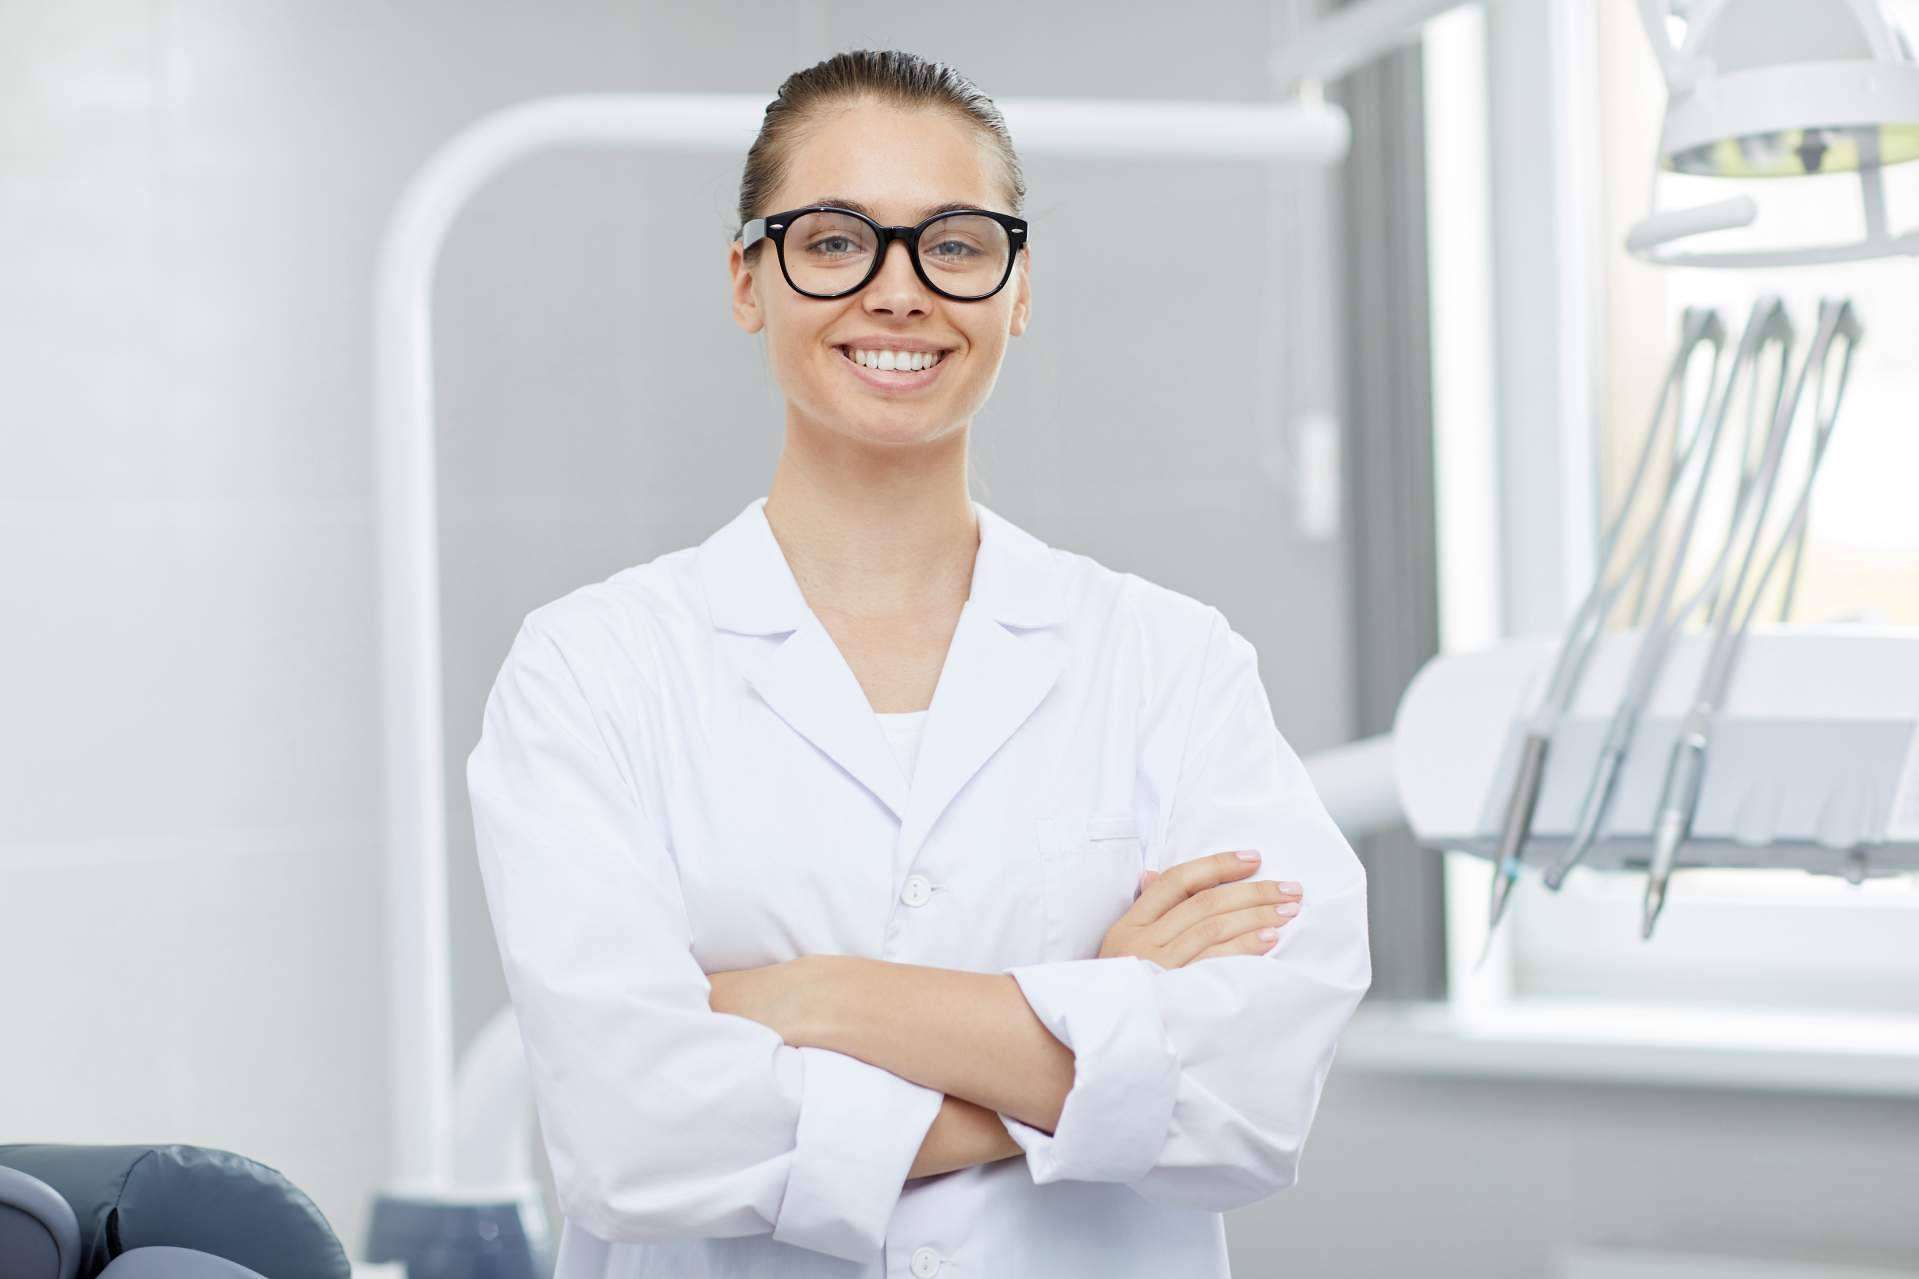 Servicio de consultoría dental para garantizar la satisfacción de los pacientes en las clínicas